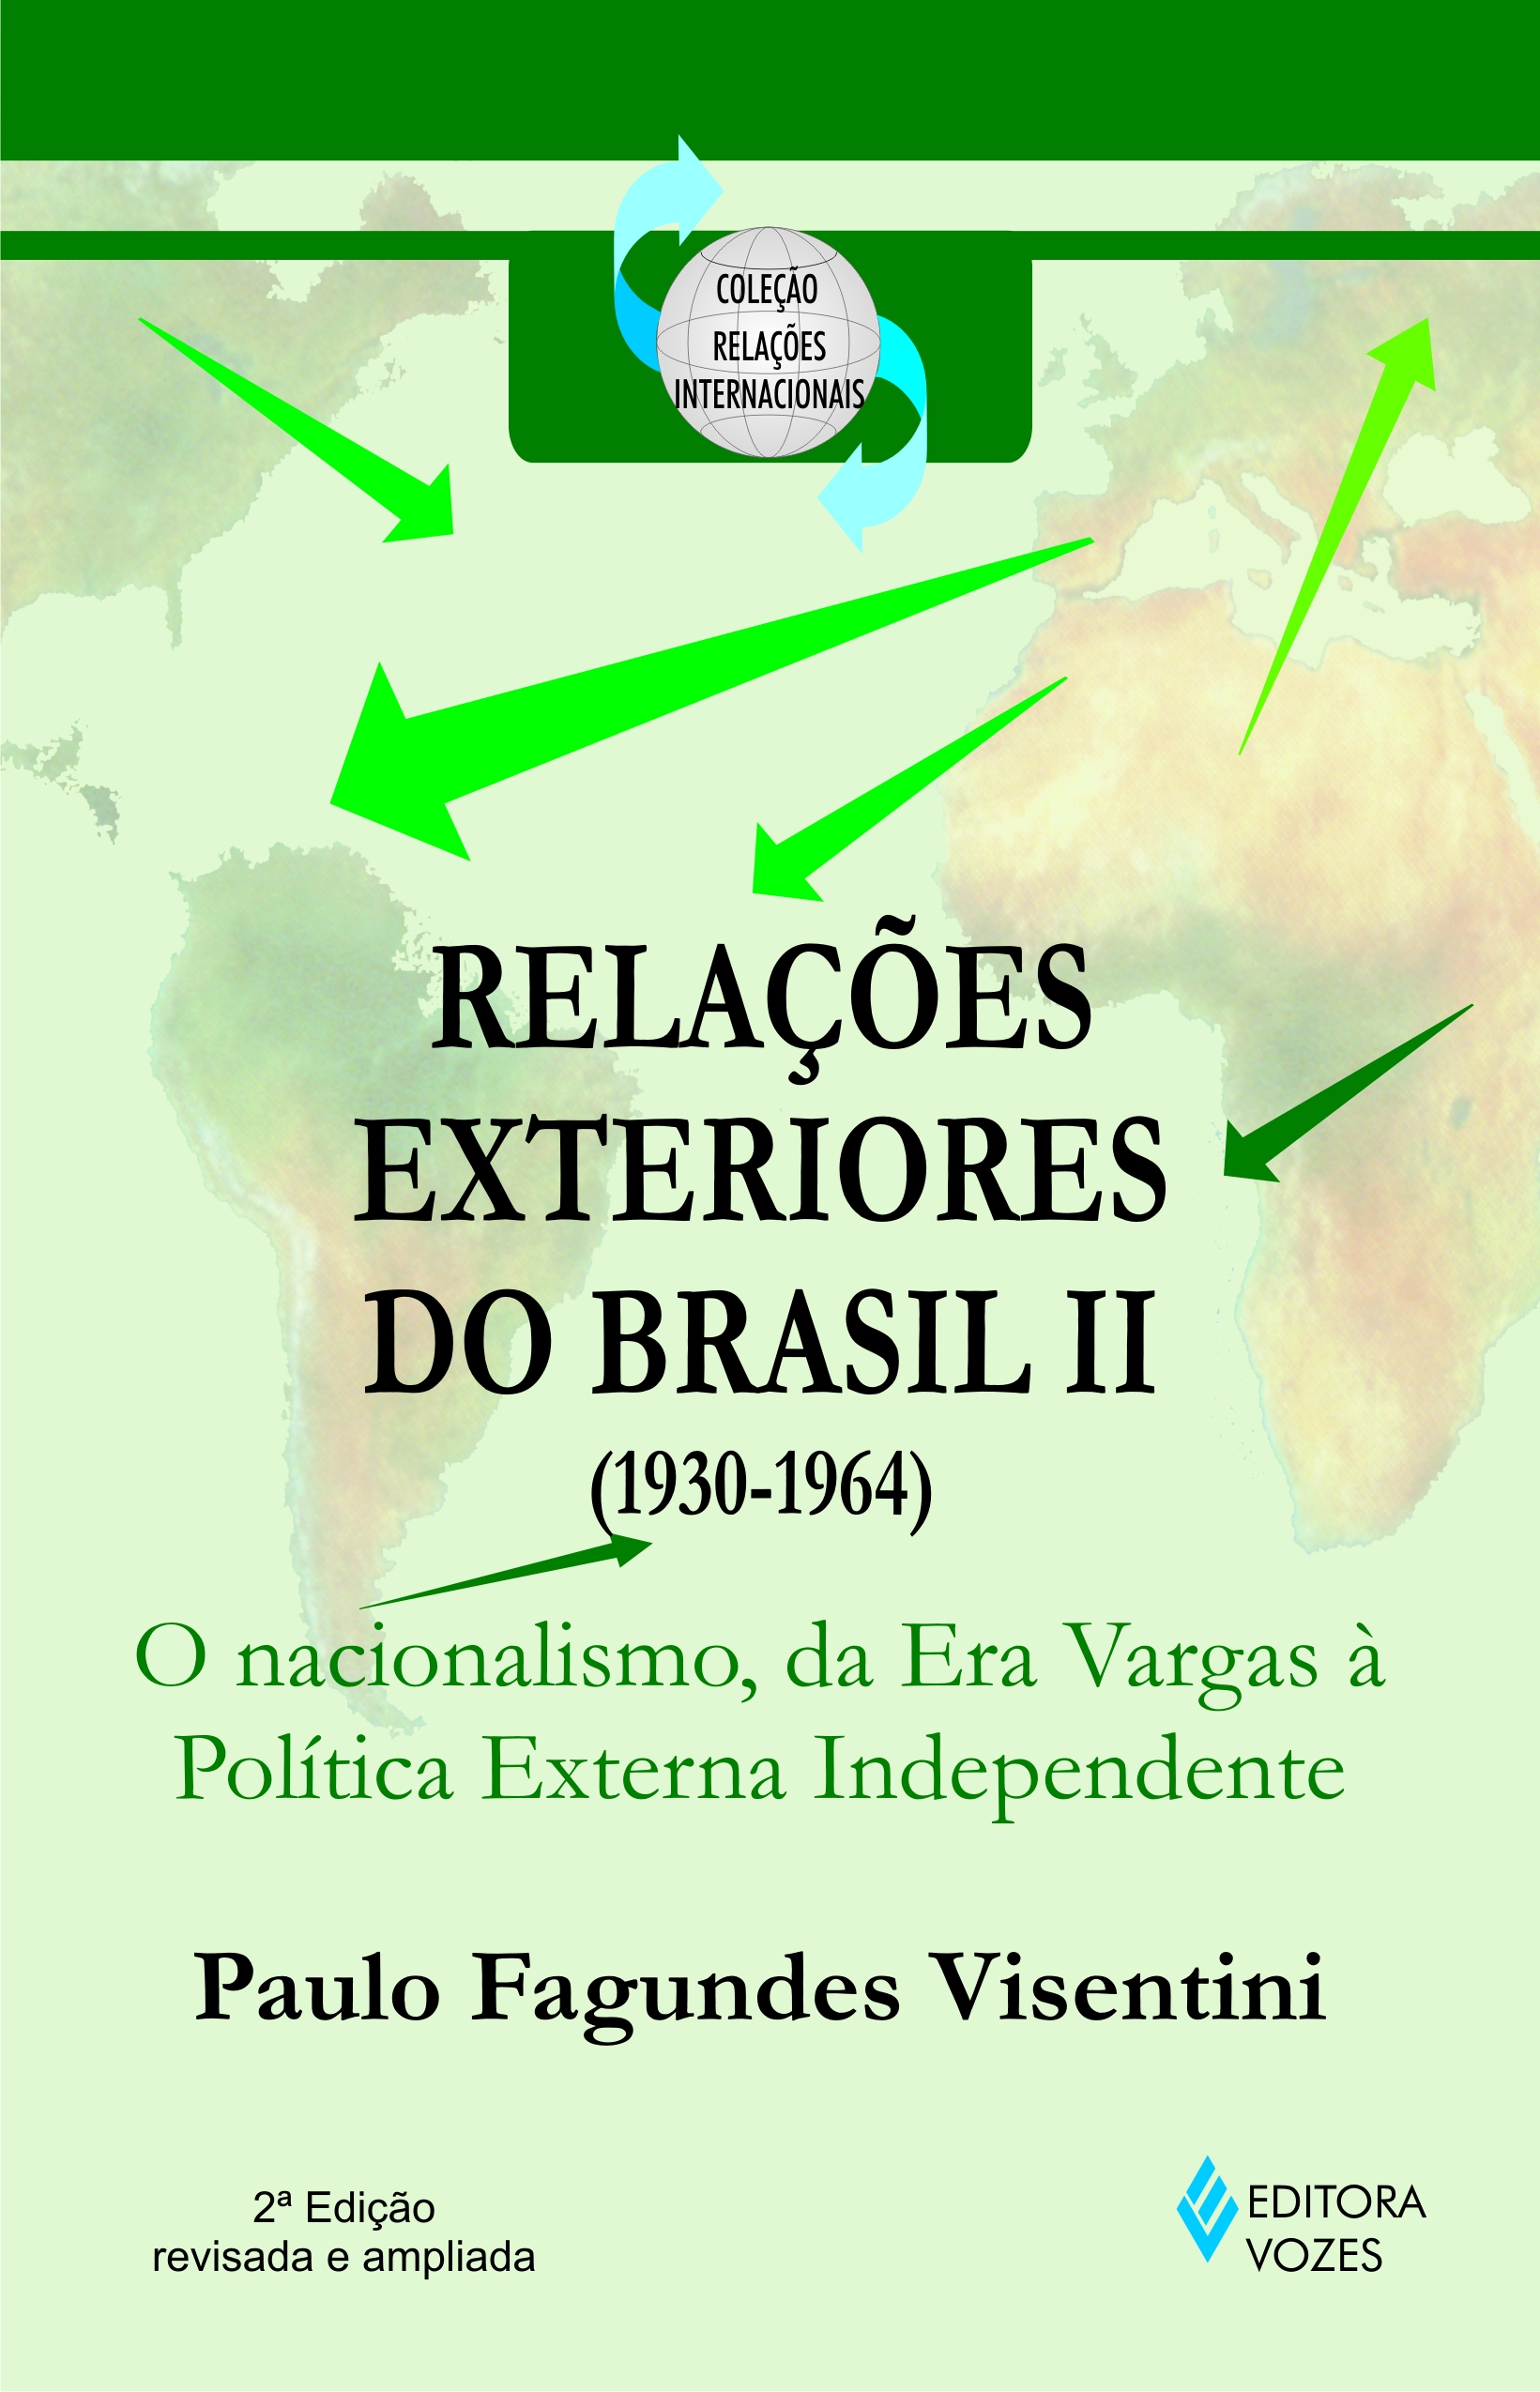 Relações Exteriores do Brasil (1945-1964)